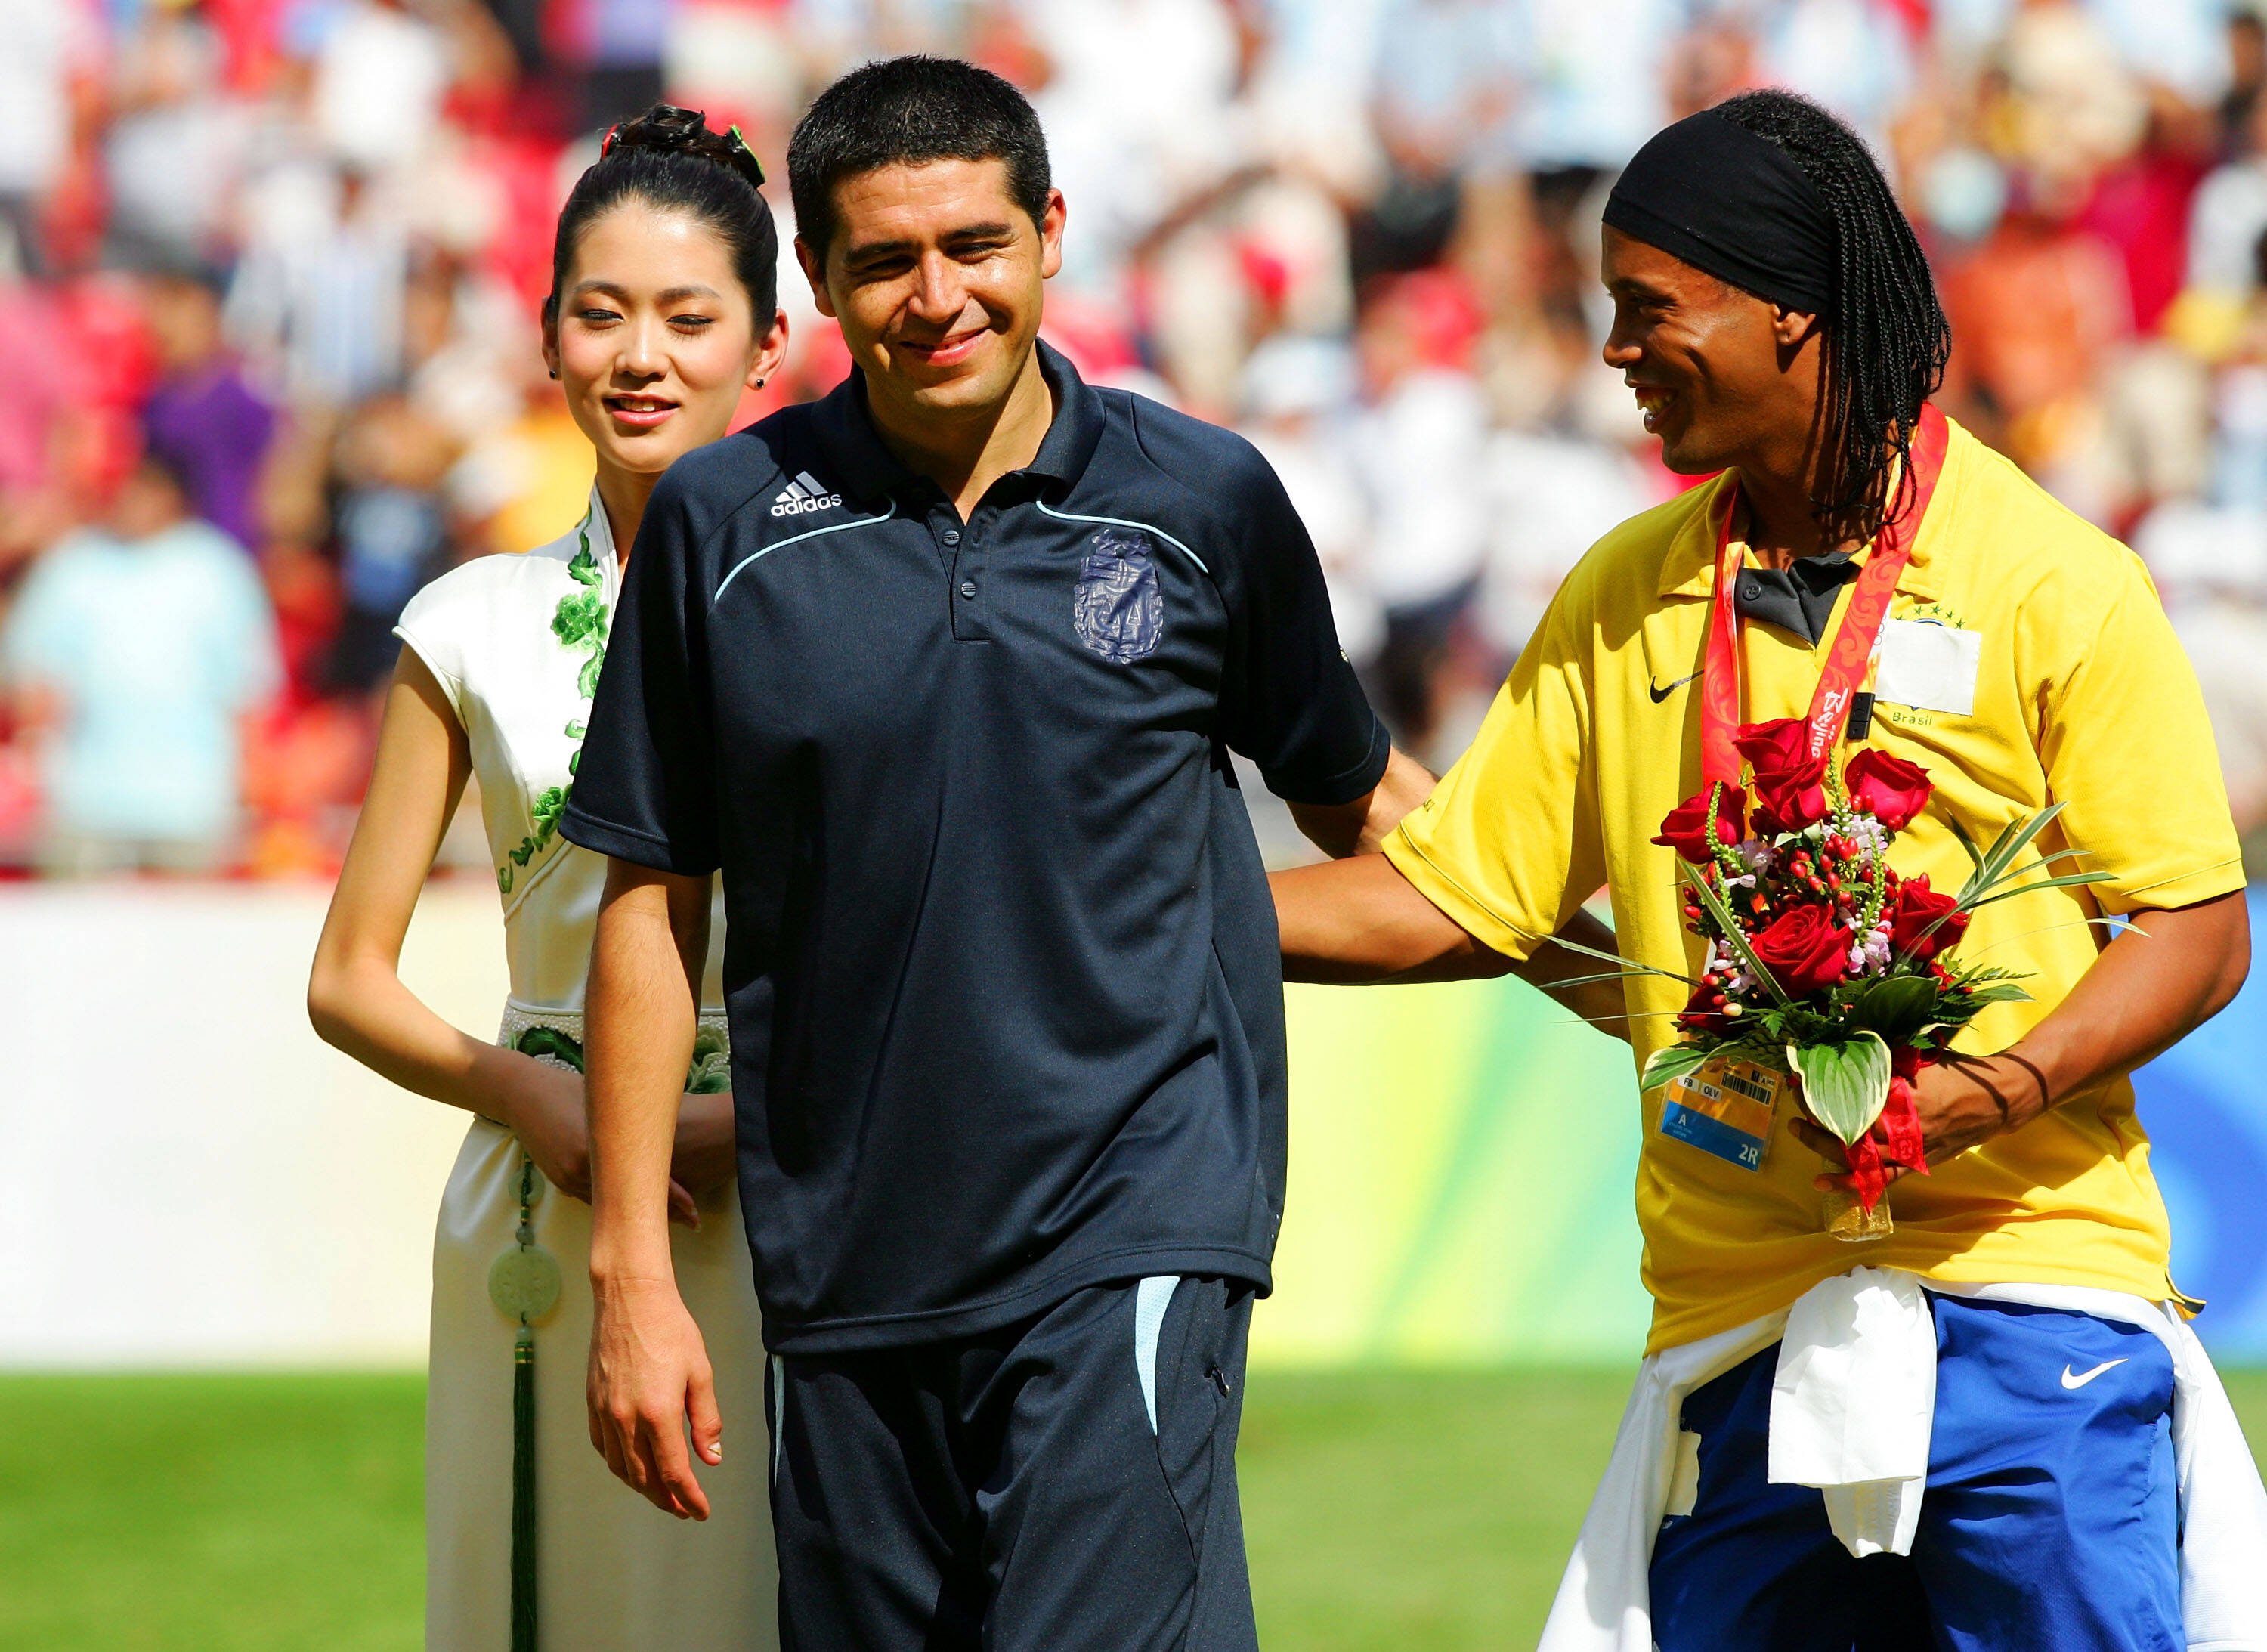 Outro momento de destaque de Riquelme contra os brasileiros pela seleção argentina aconteceu na vitória por 3 a 0 na semifinal das Olimpíadas de Pequim, em 2008. Foto: Getty Images